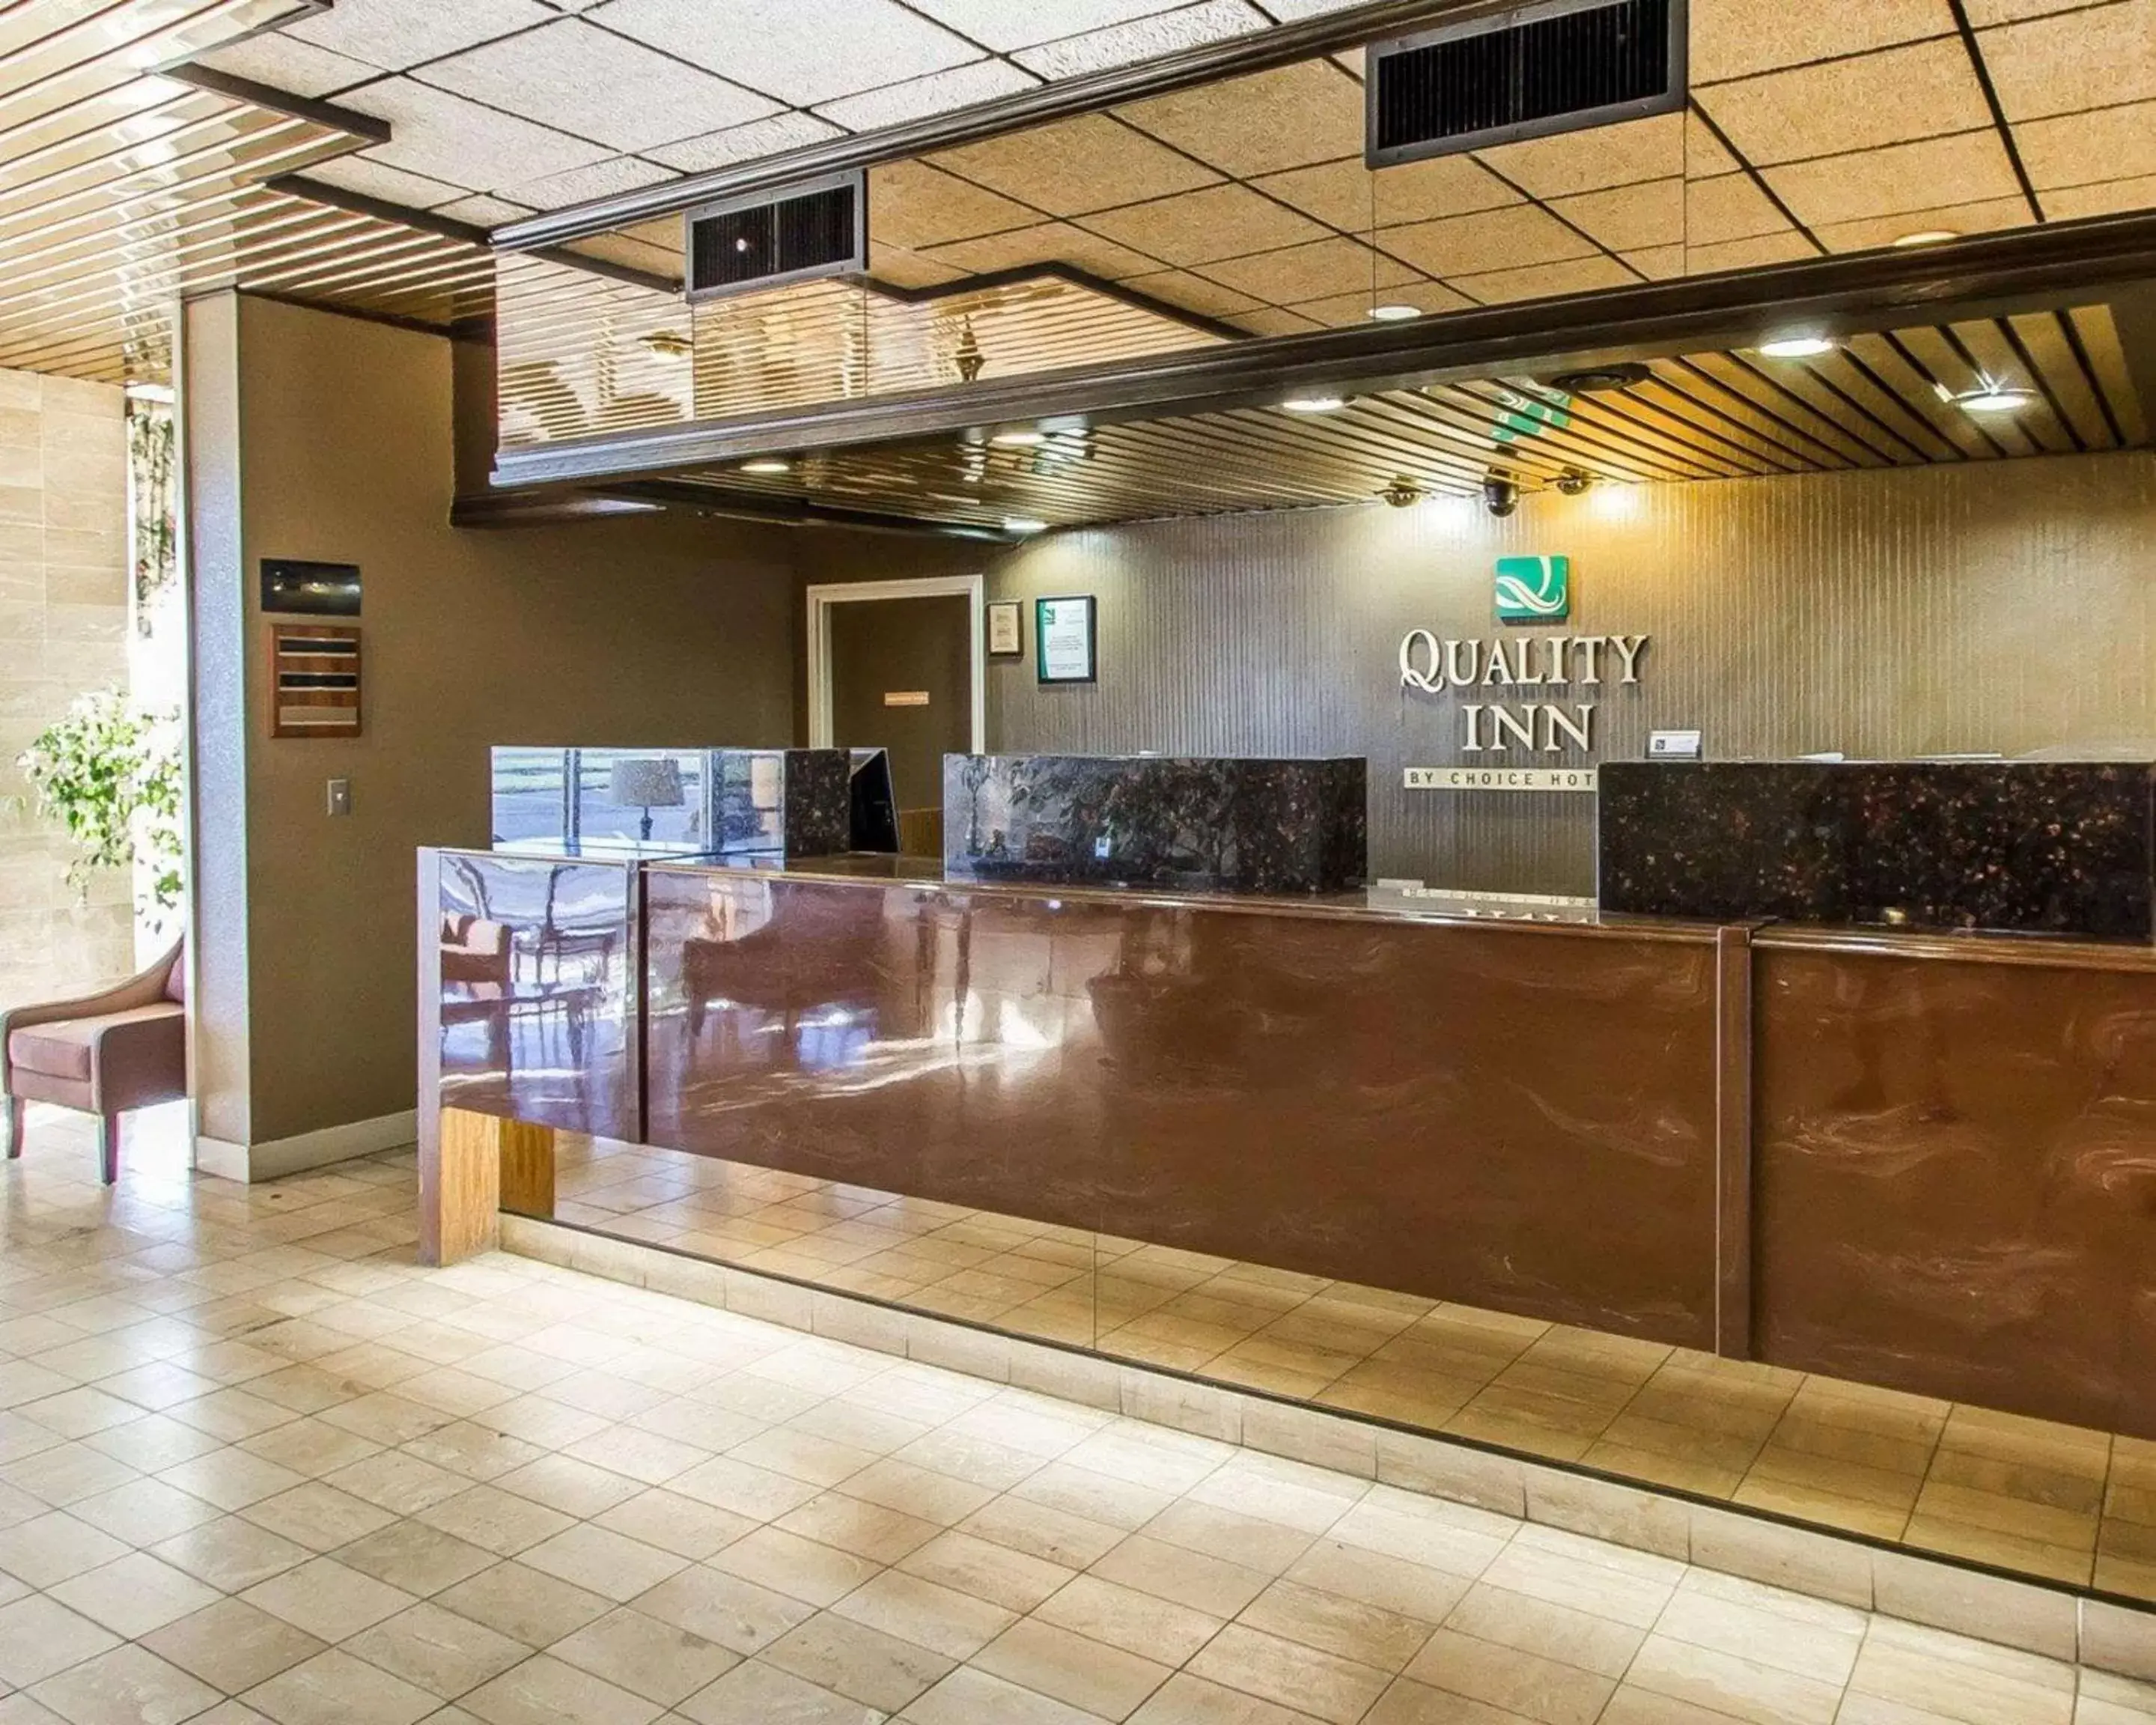 Lobby or reception, Lobby/Reception in Quality Inn Ada near University